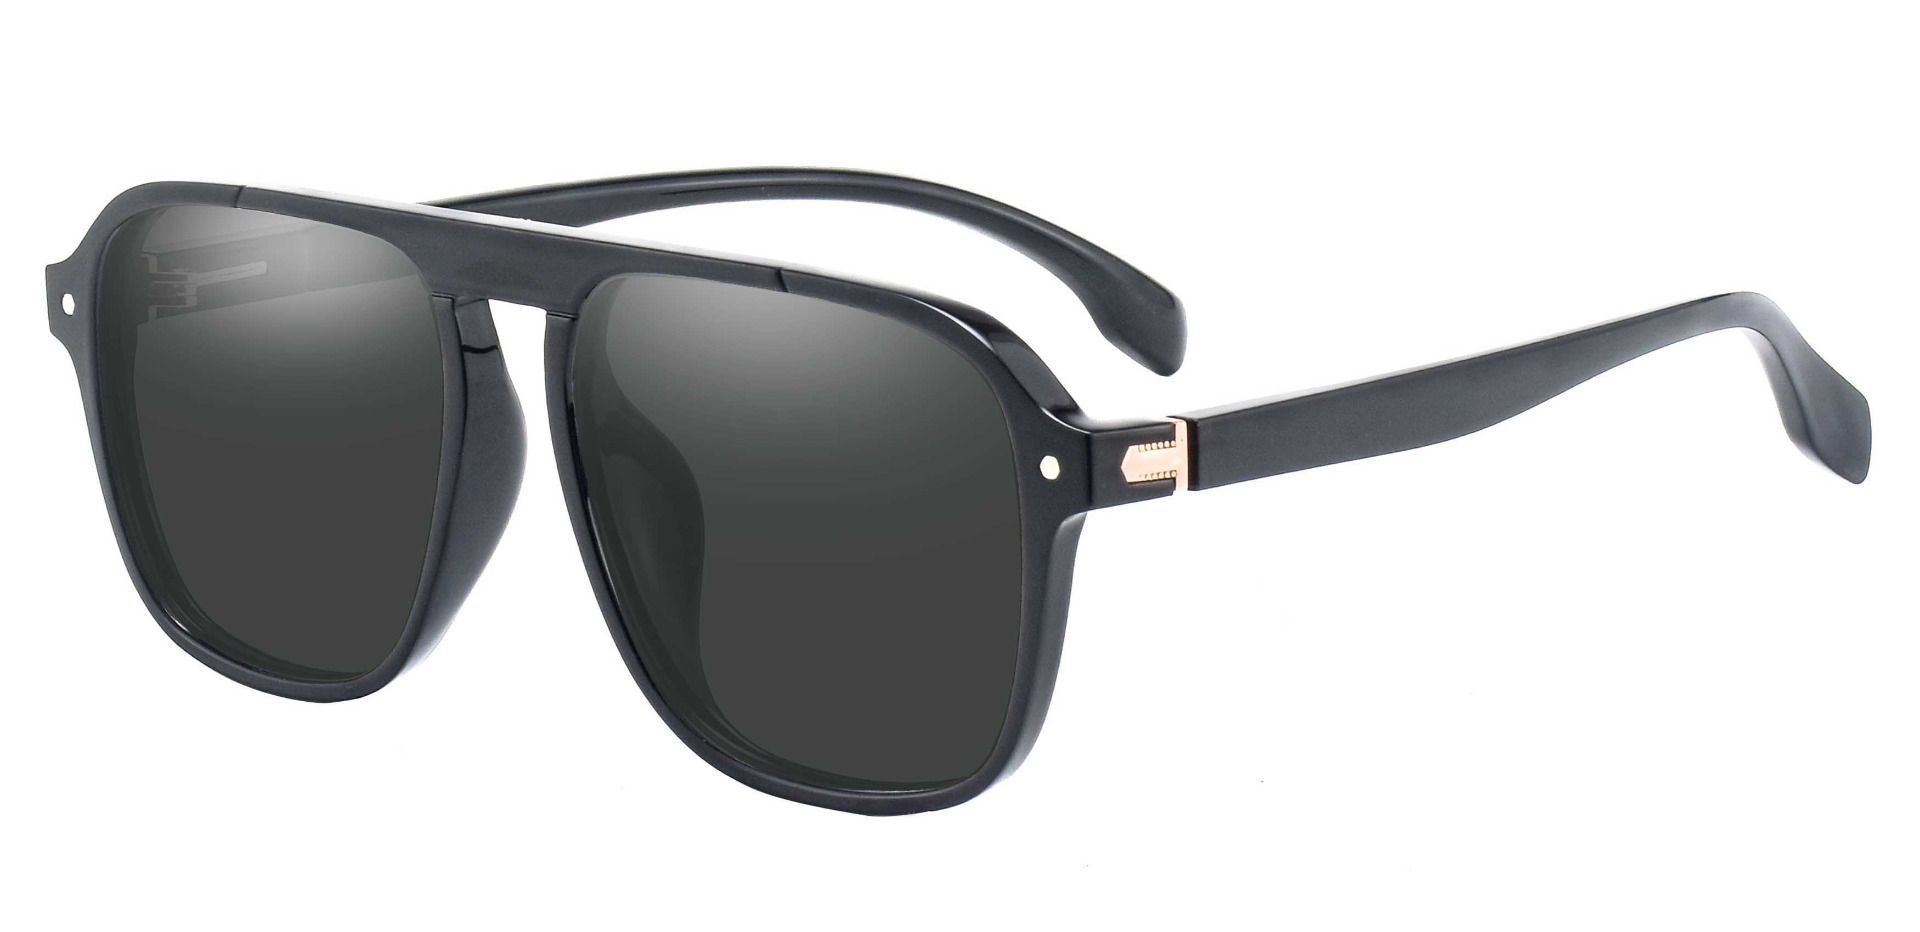 Gideon Aviator Progressive Sunglasses - Black Frame With Gray Lenses